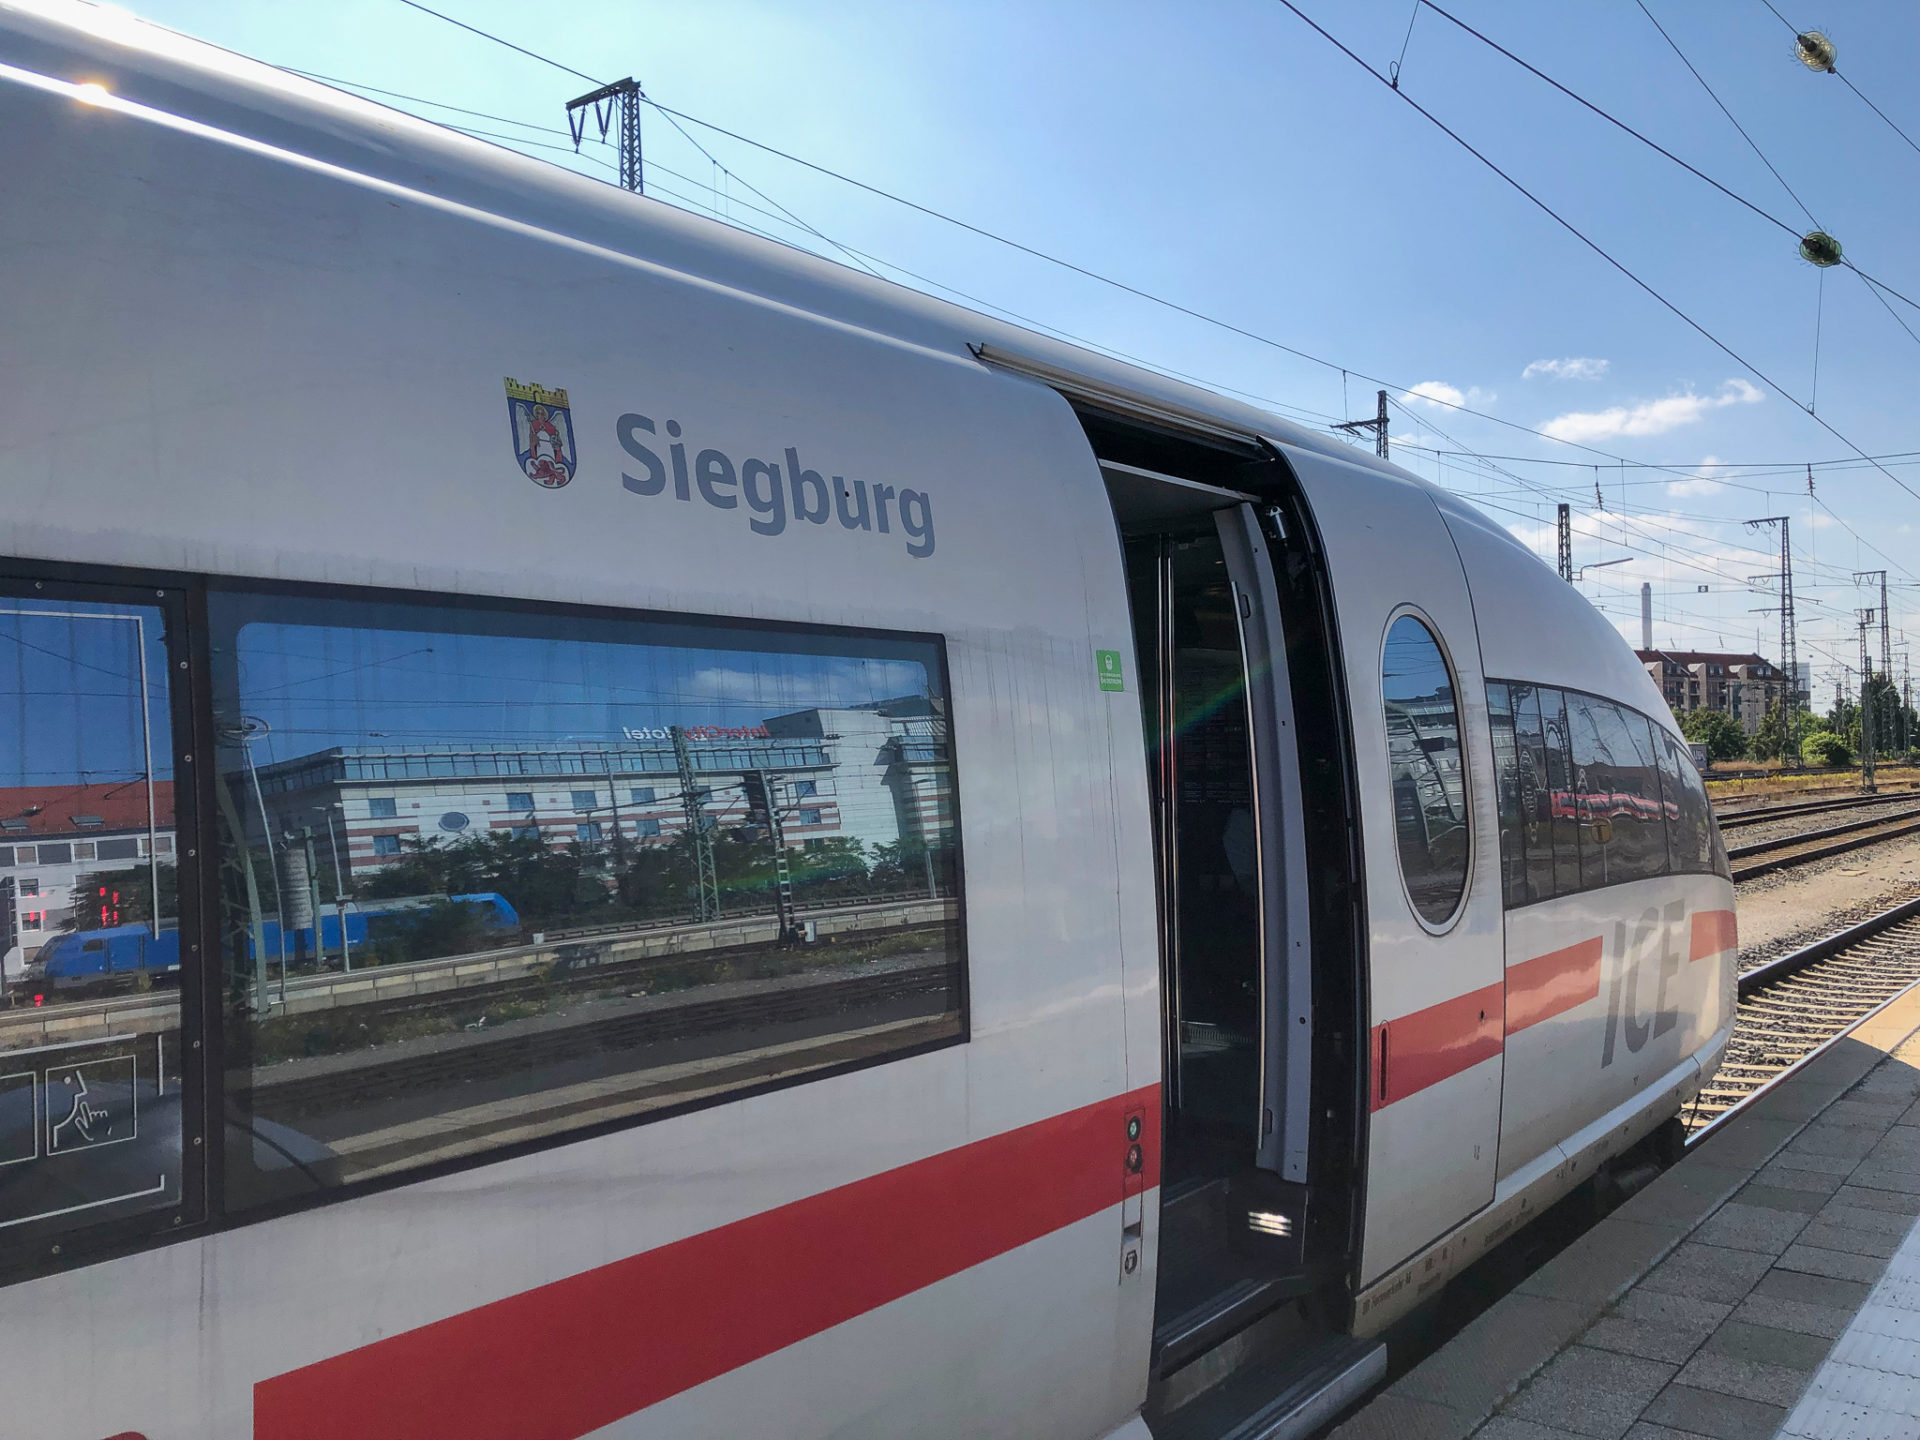 Der ICE mit dem Namen Siegburg der Deutschen Bahn